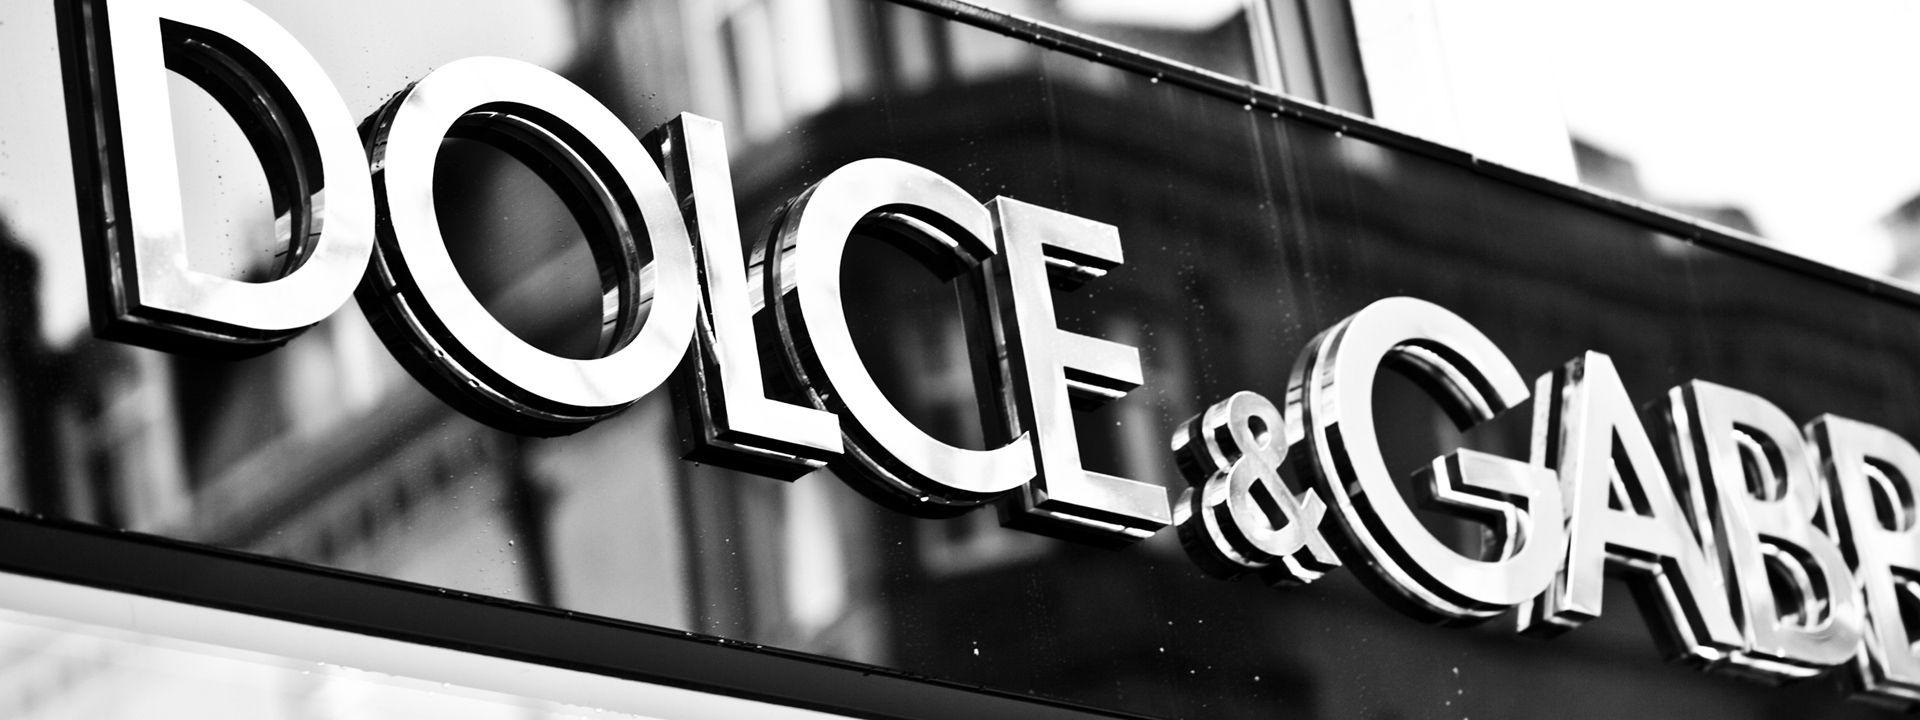 Dolce & Gabbana Logo - Dolce & Gabbana Store, Sloane Street, London | Sloane Street